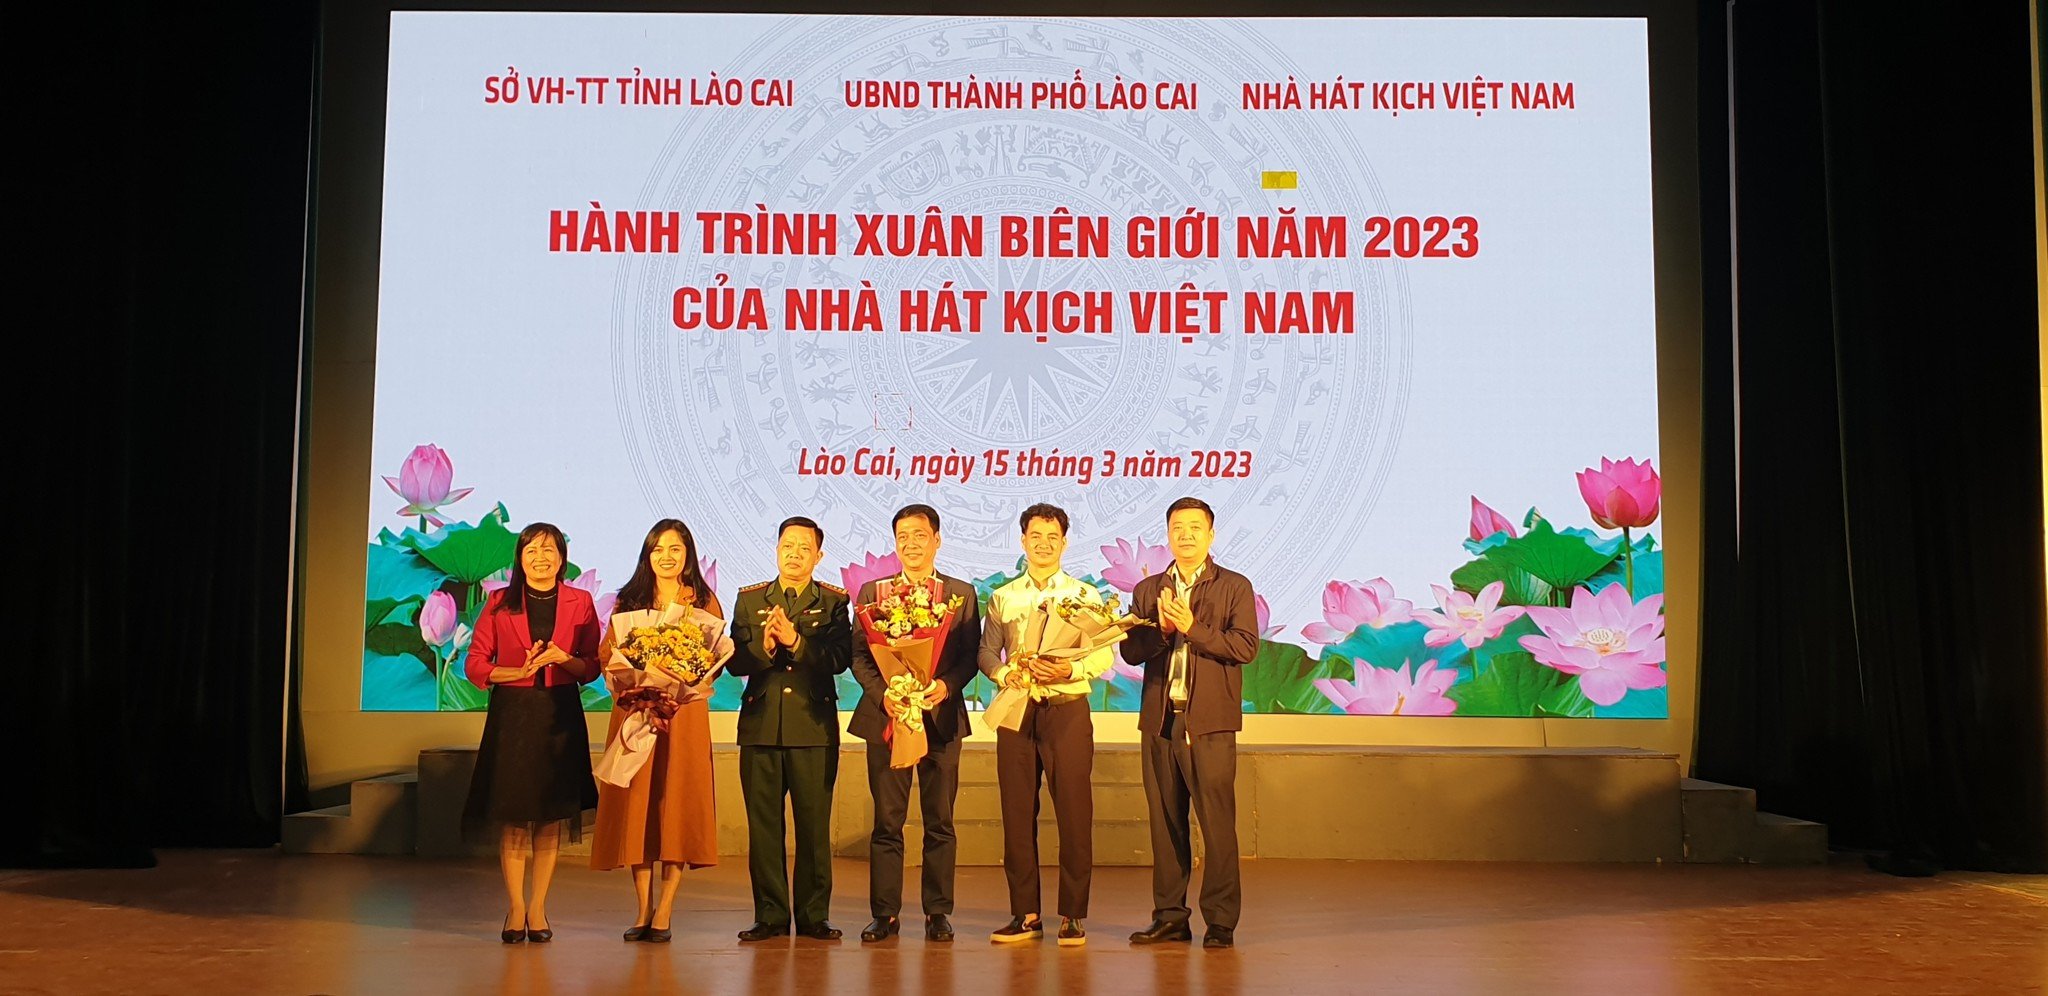 Nhà hát Kịch Việt Nam và hành trình Xuân Biên giới